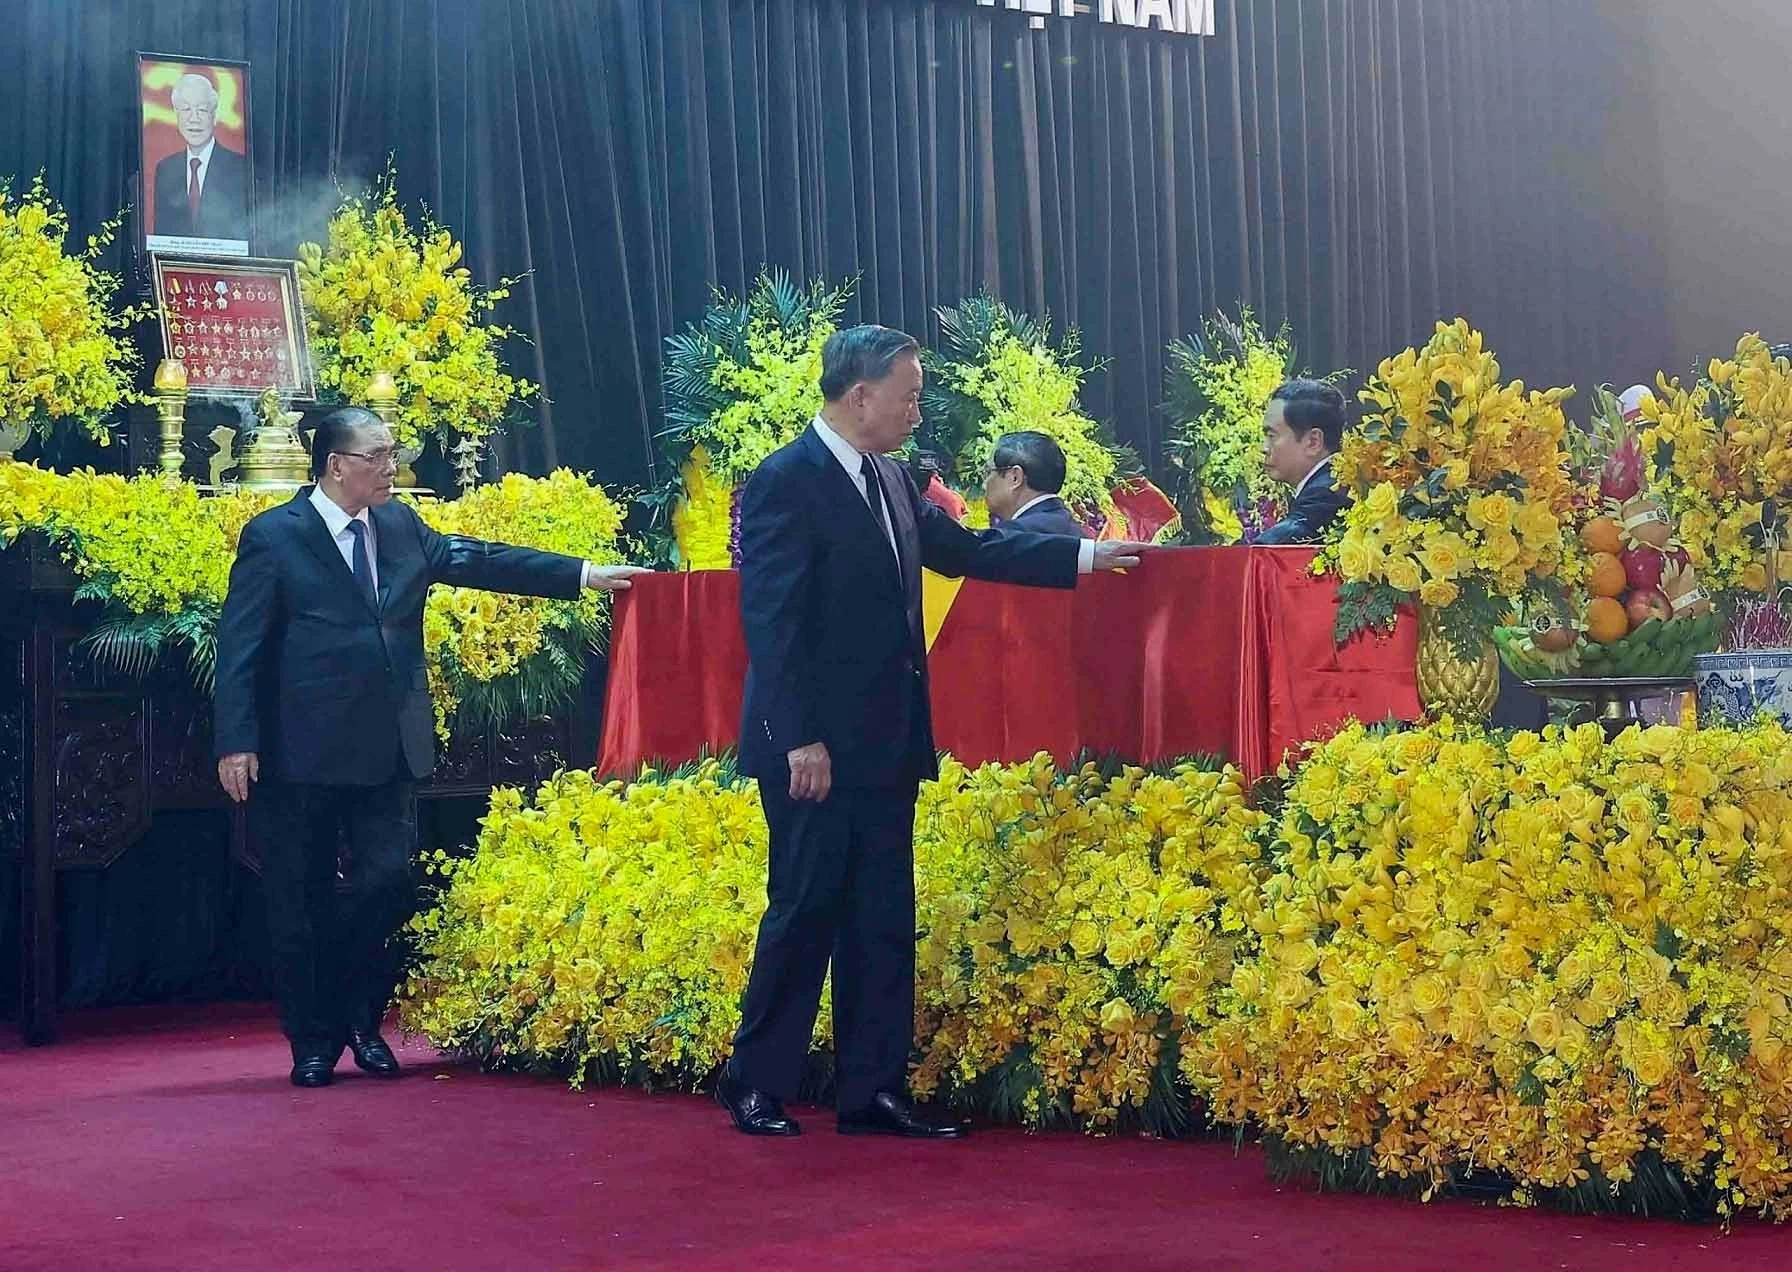 Trọn cuộc đời Tổng Bí thư Nguyễn Phú Trọng đã bền bỉ cống hiến cho Đảng và dân tộc